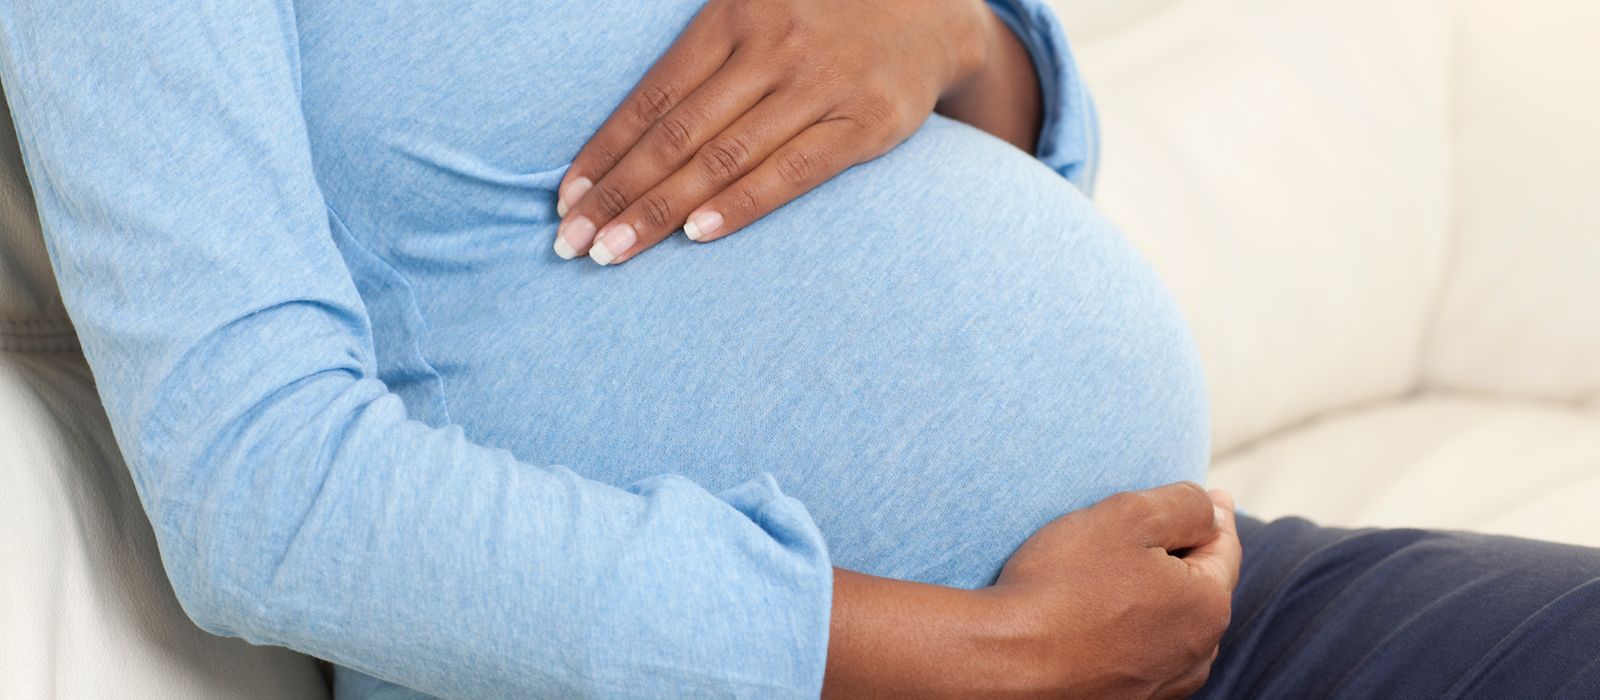 Eine schwangere Frau hält sich ihre Hände an den Bauch